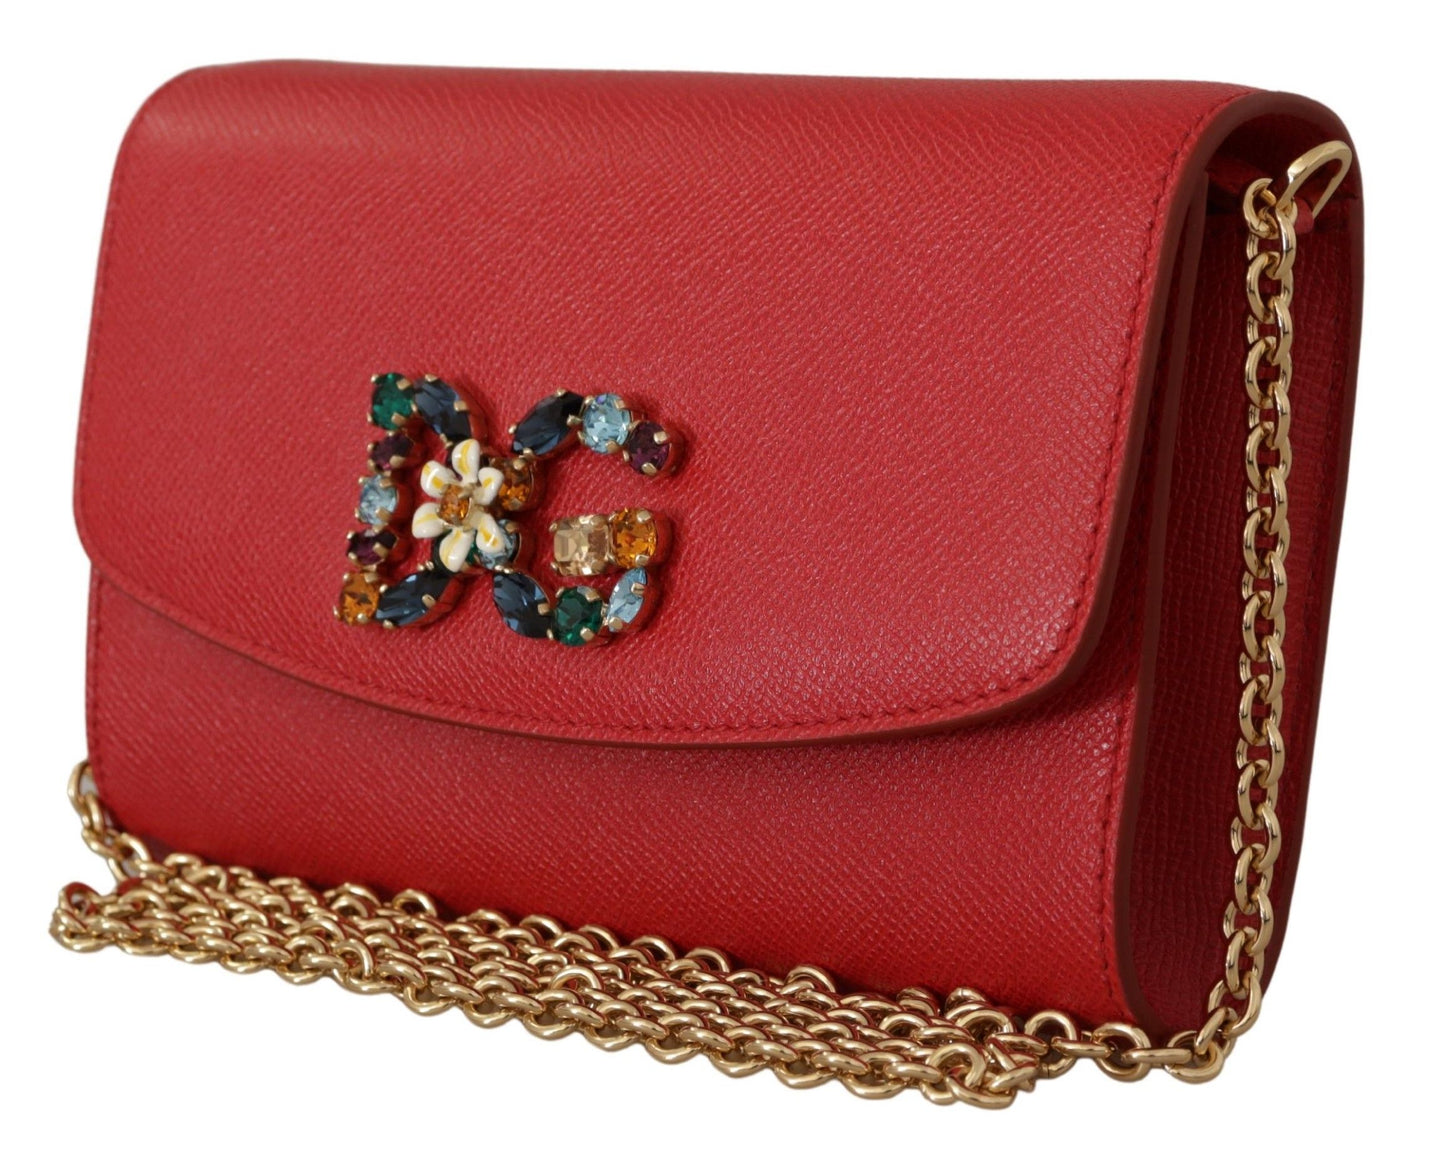 Elegant Red Leather Shoulder Bag with Gold Details